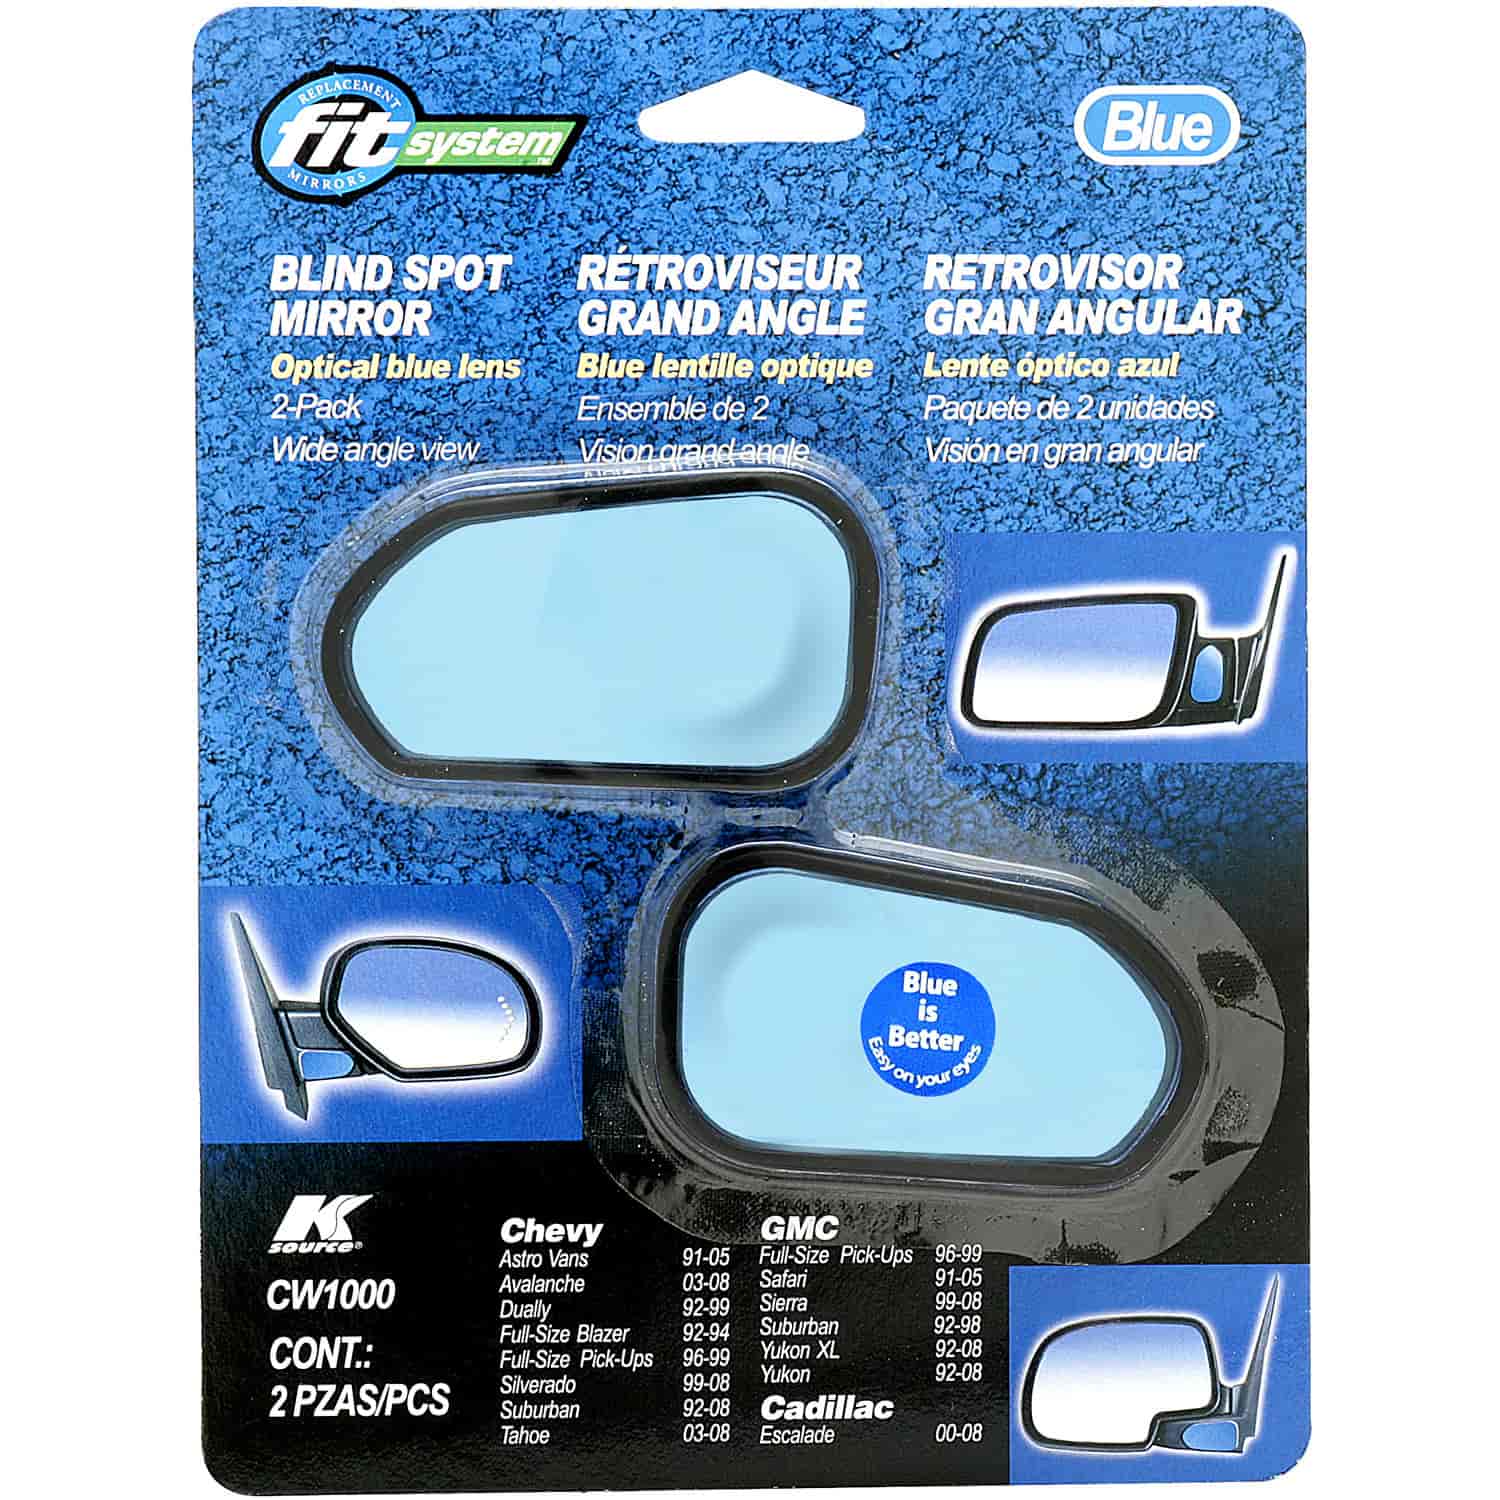 Custom Fit Spot Mirror Chevy 2 Pack Blue Lens Optical Blue Lens to Reduce Glare Custom Designed for